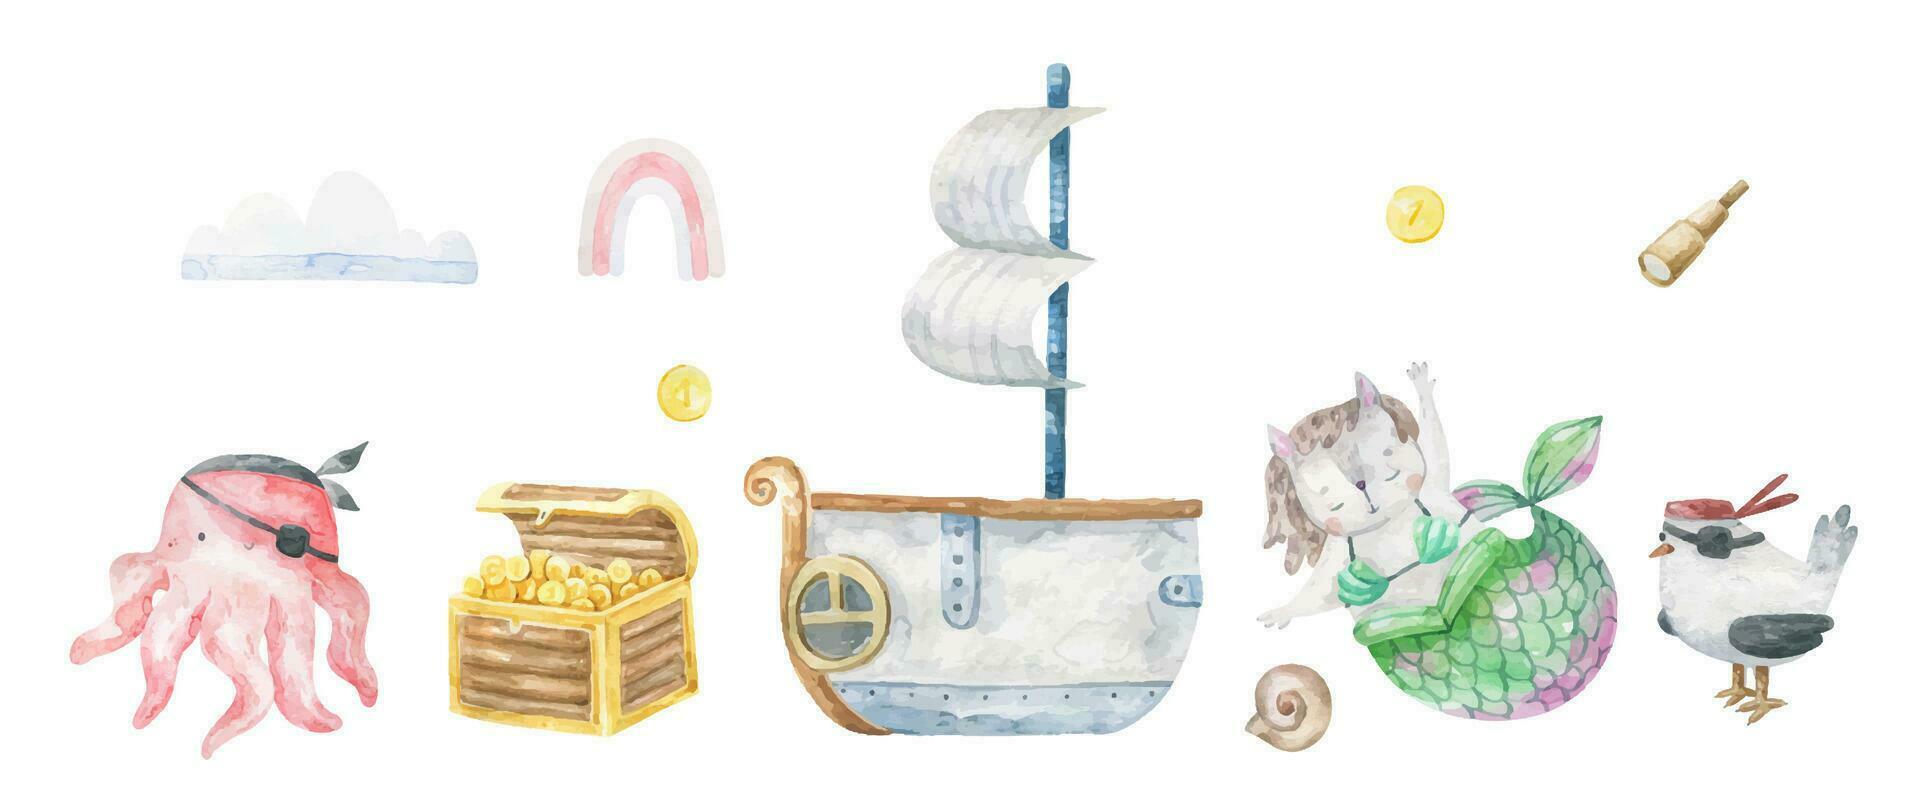 pirate collection avec une Sirène chat, un poulpe et une pirate mouette. un vieux pirate navire et une en bois poitrine avec trésors. mignonne puéril main tiré illustration vecteur